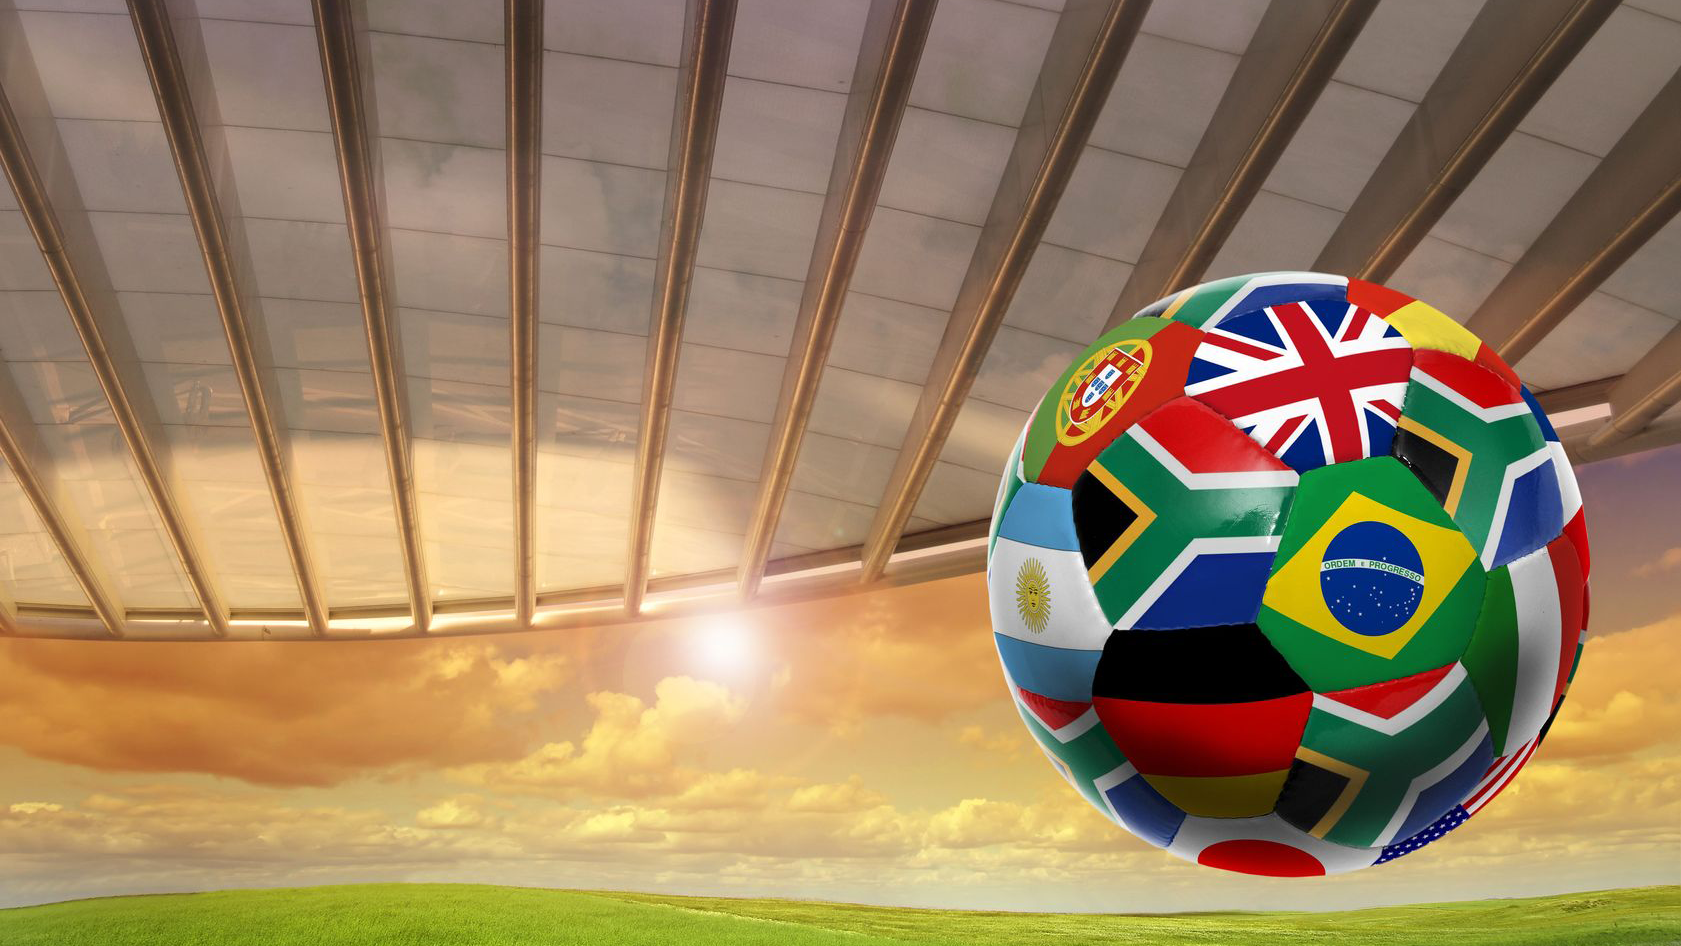 É possível registrar a marca Copa do Mundo? - Audita Assessoria Empresarial